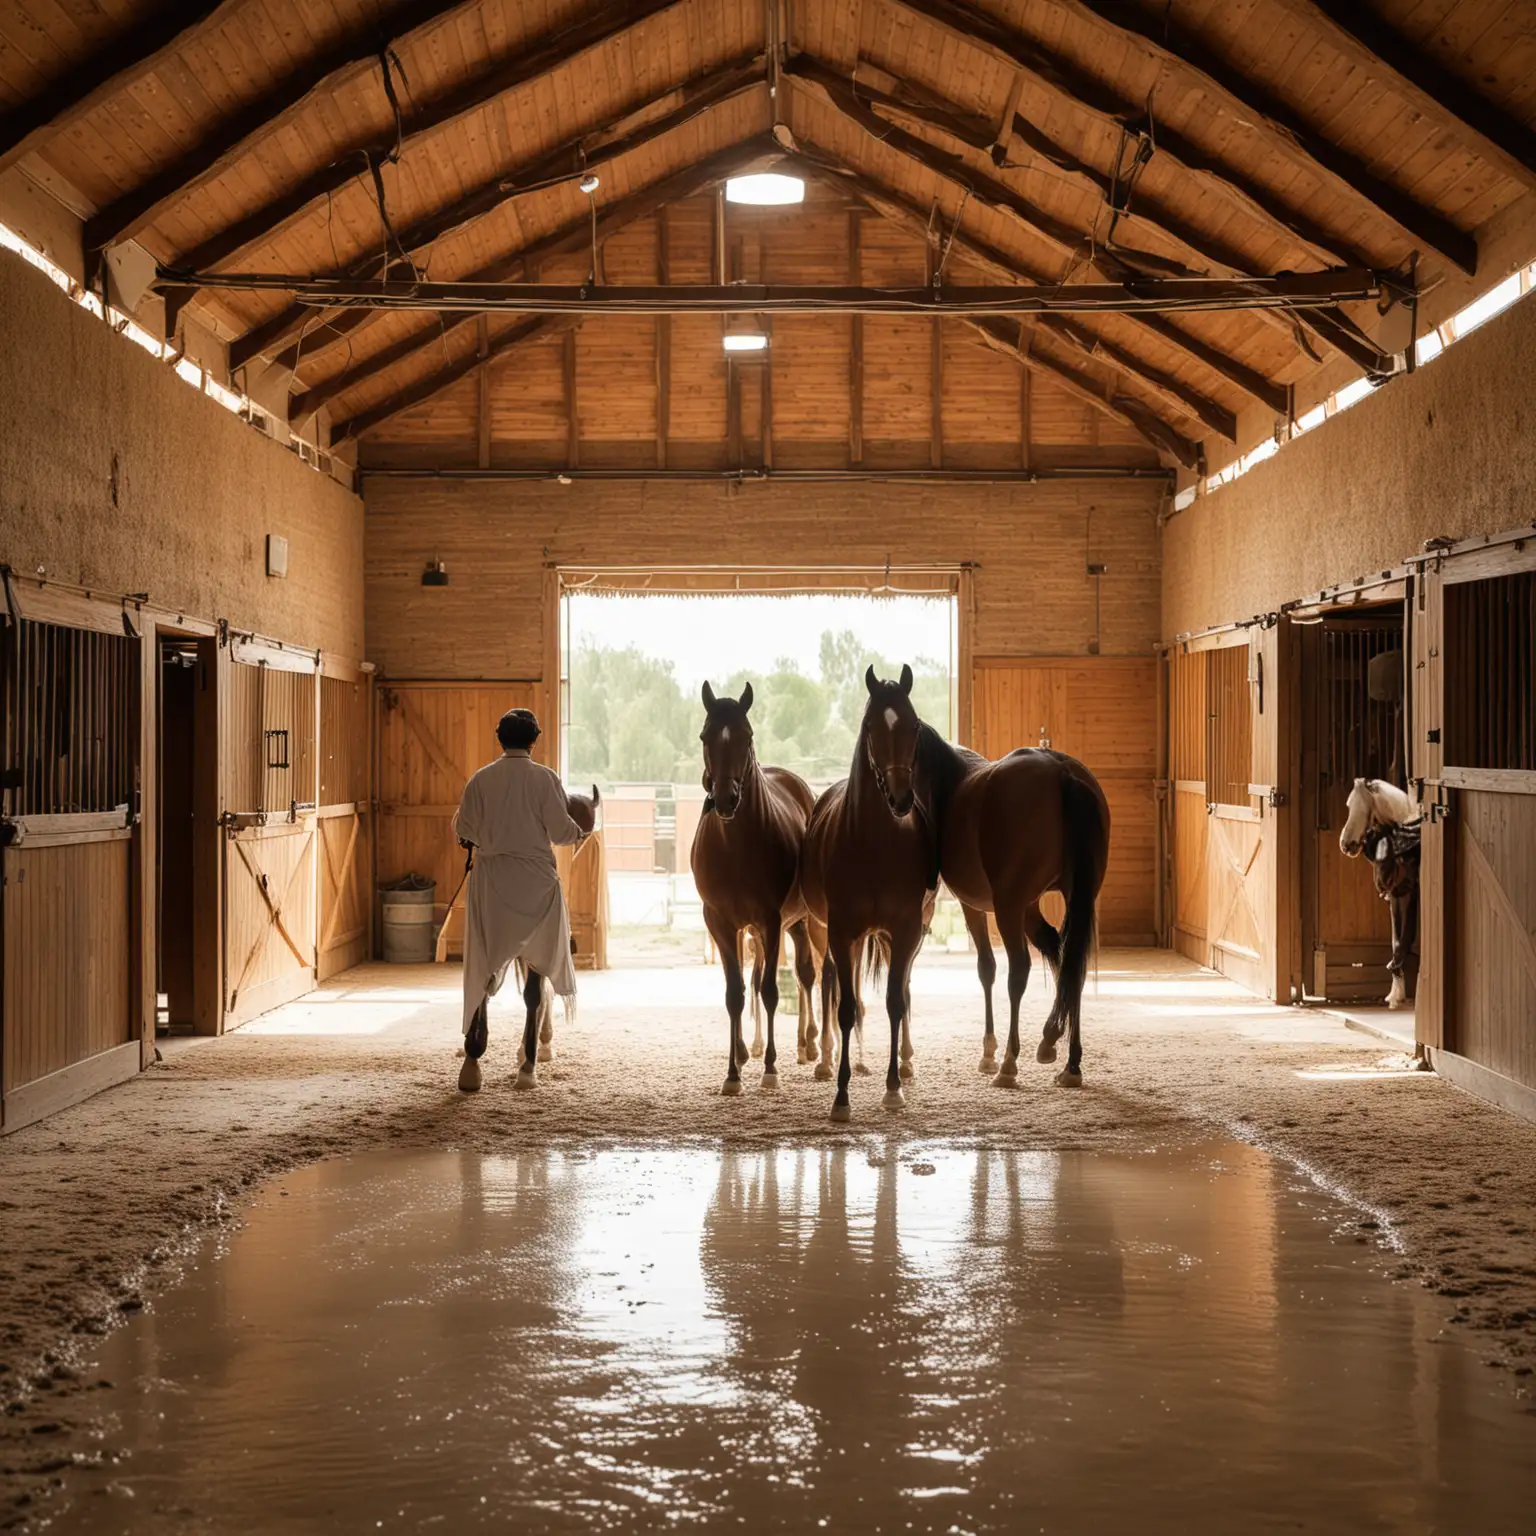 Pferdestall mit arabern, lichtdurchflutet, freundliche athmosphäre

